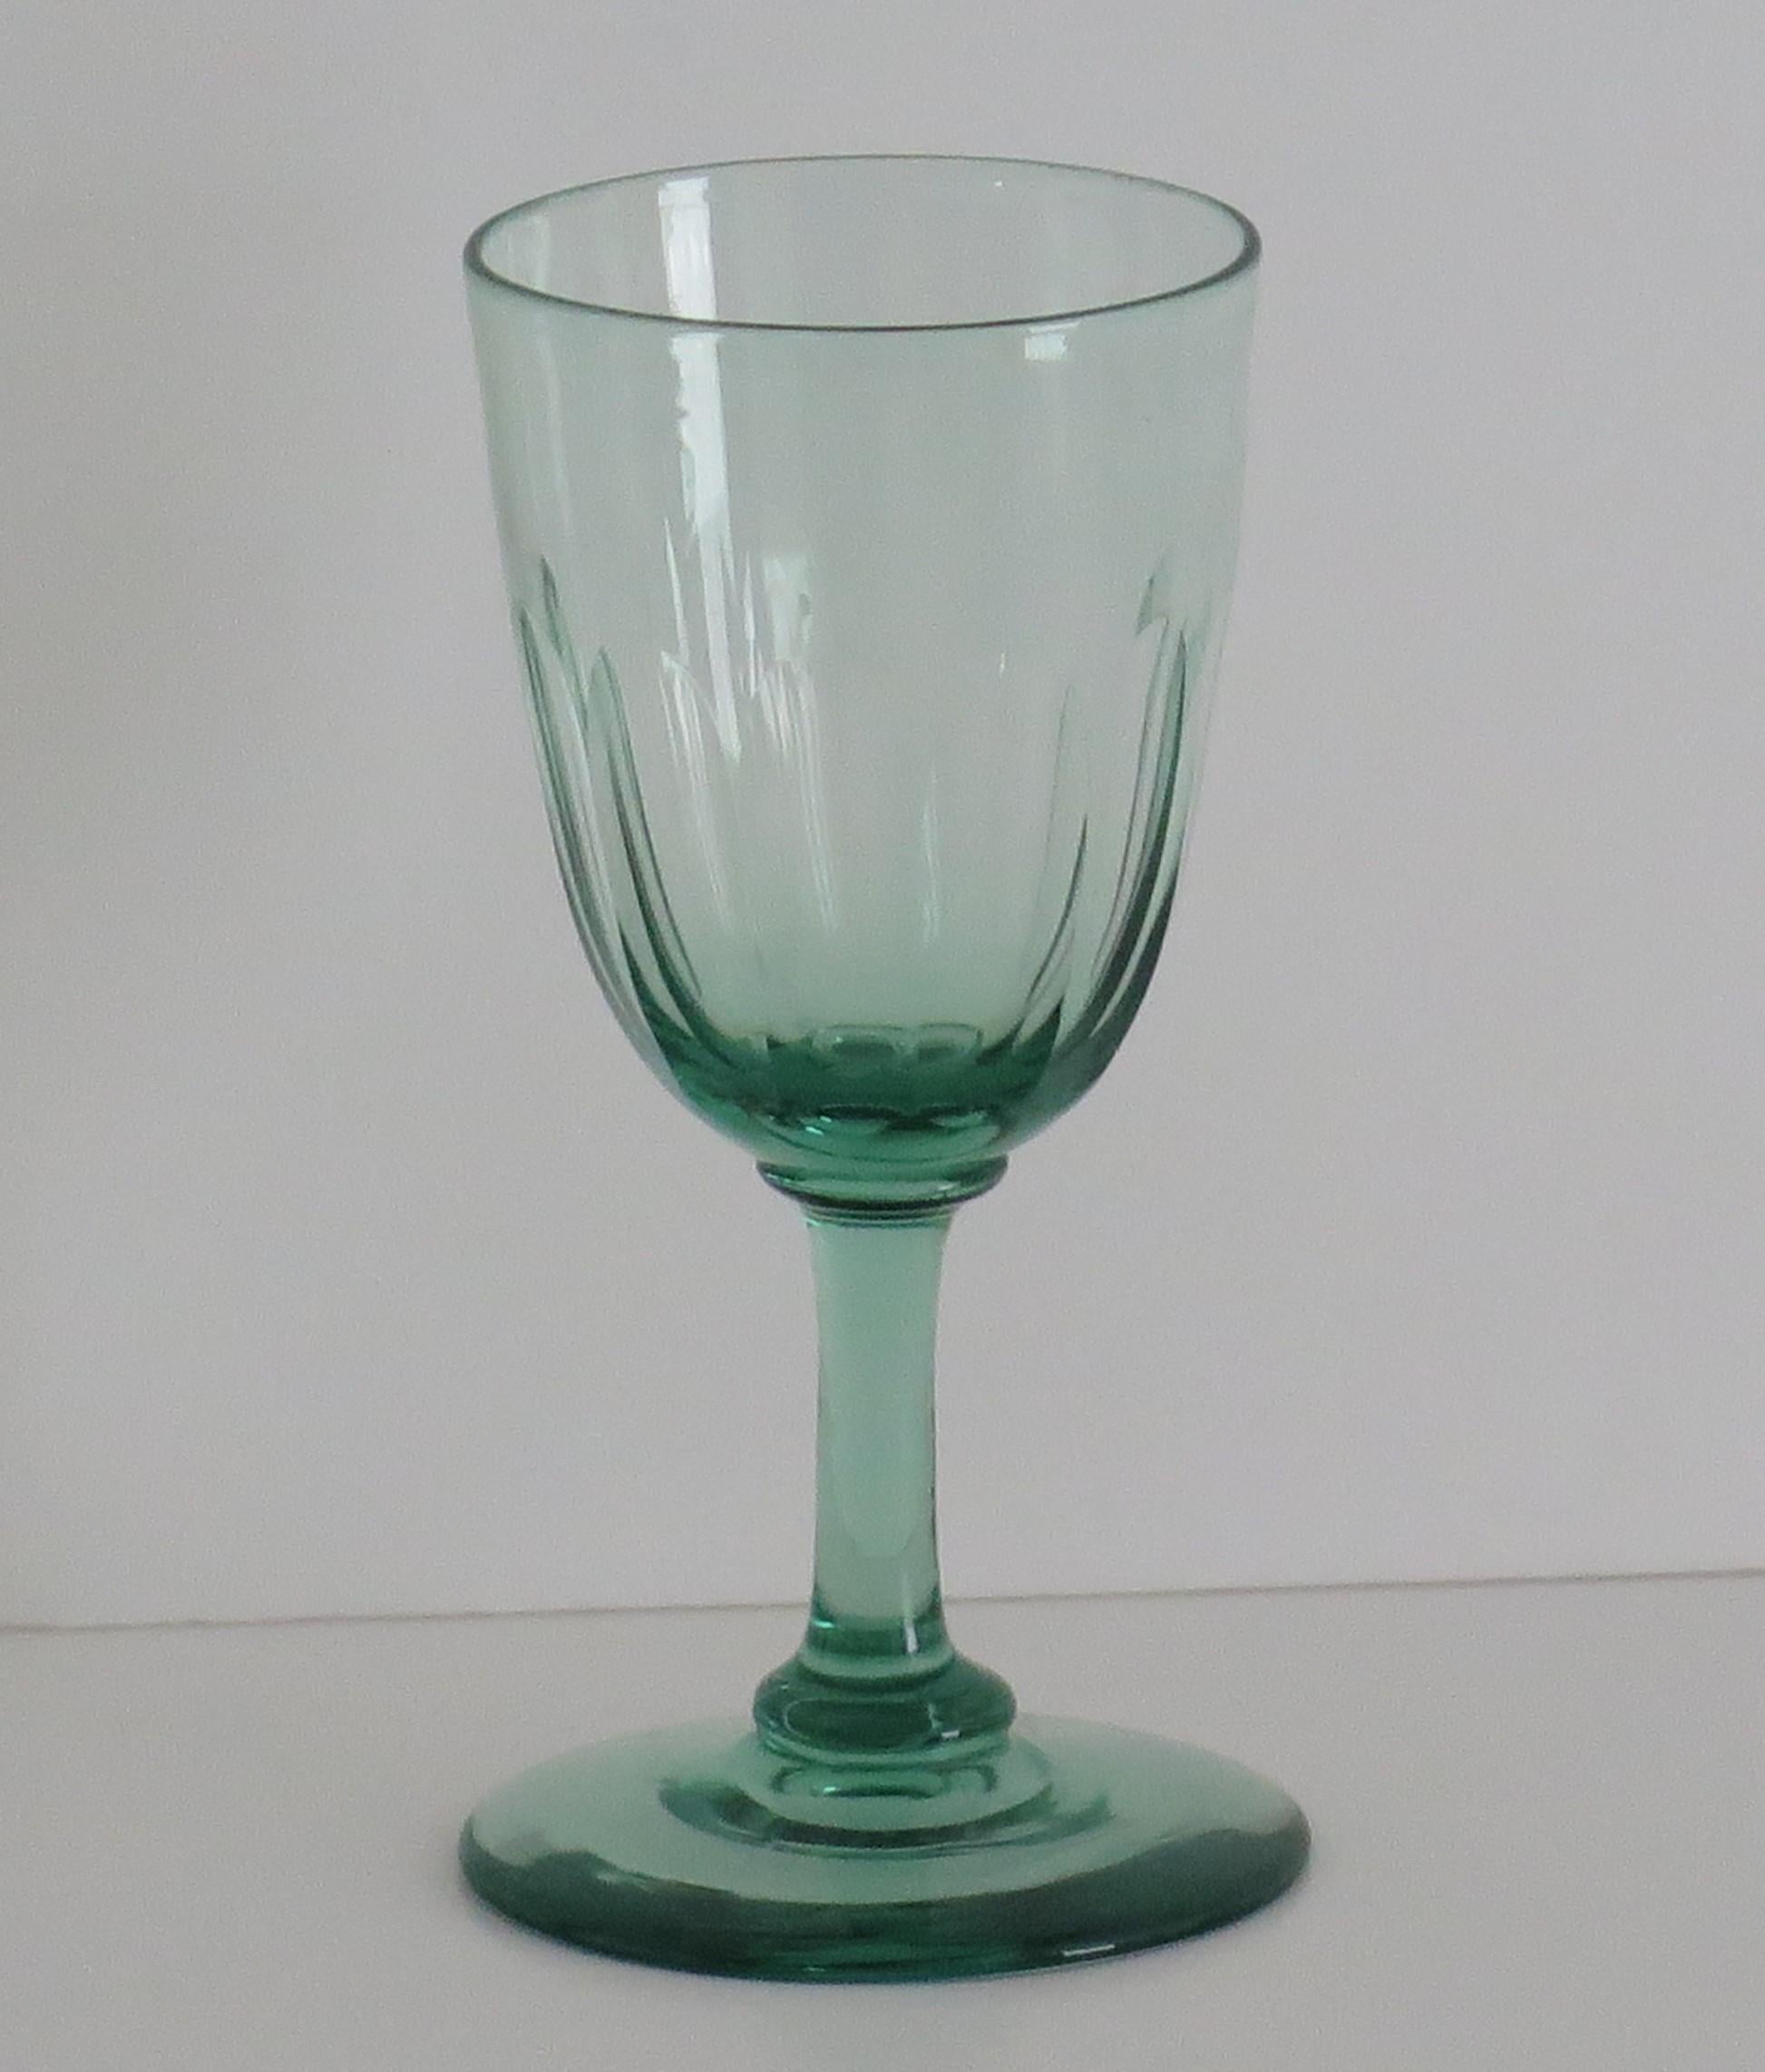 Dies ist ein gutes Beispiel für ein frühes viktorianisches englisches, mundgeblasenes, hellgrünes Weintrinkglas mit einer geschliffenen Schale aus der Zeit um 1840.

Dieses Glas hat eine runde Trichterschale über einem massiven Stiel, der auf